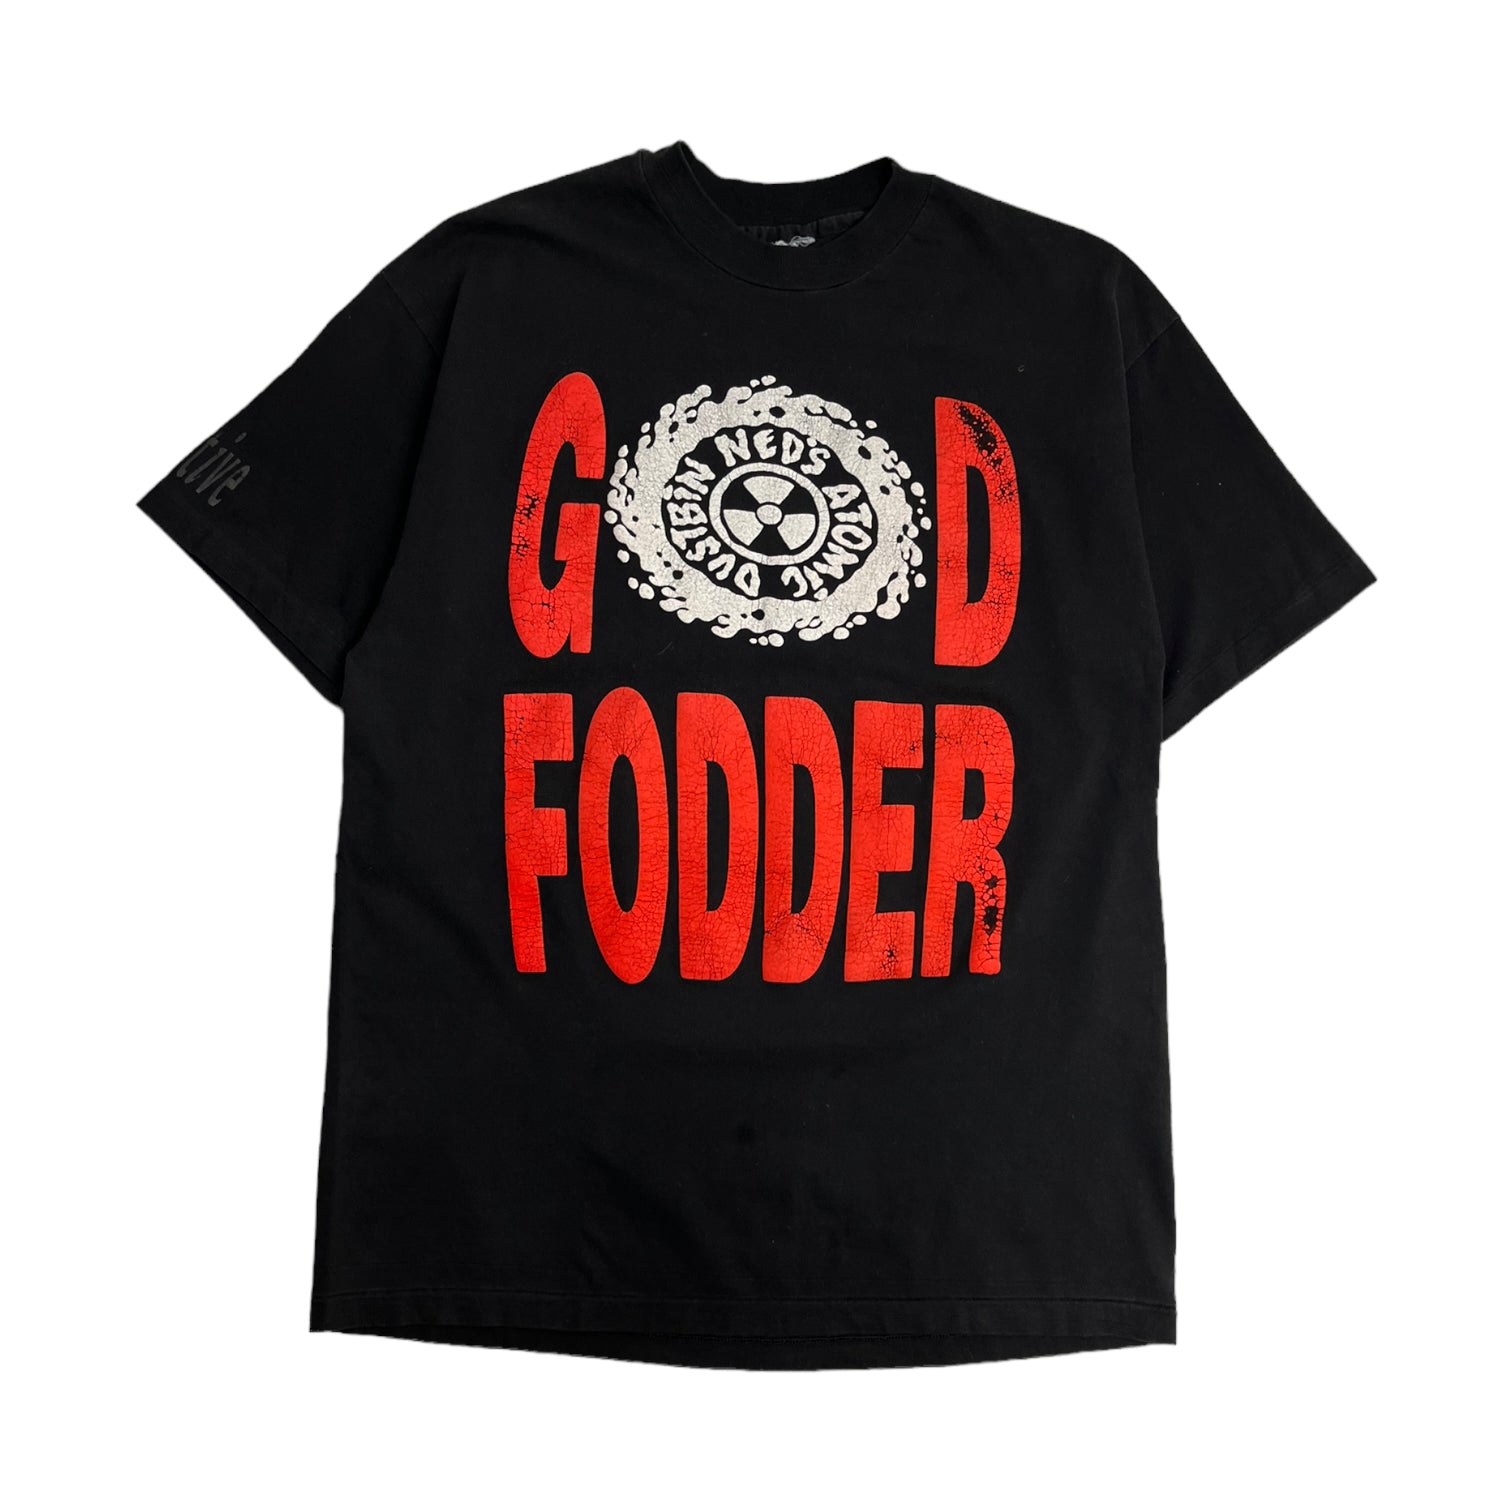 Vintage "Ned's Atomic Dustbin" God Fodder Shirt - Graphic Shirt